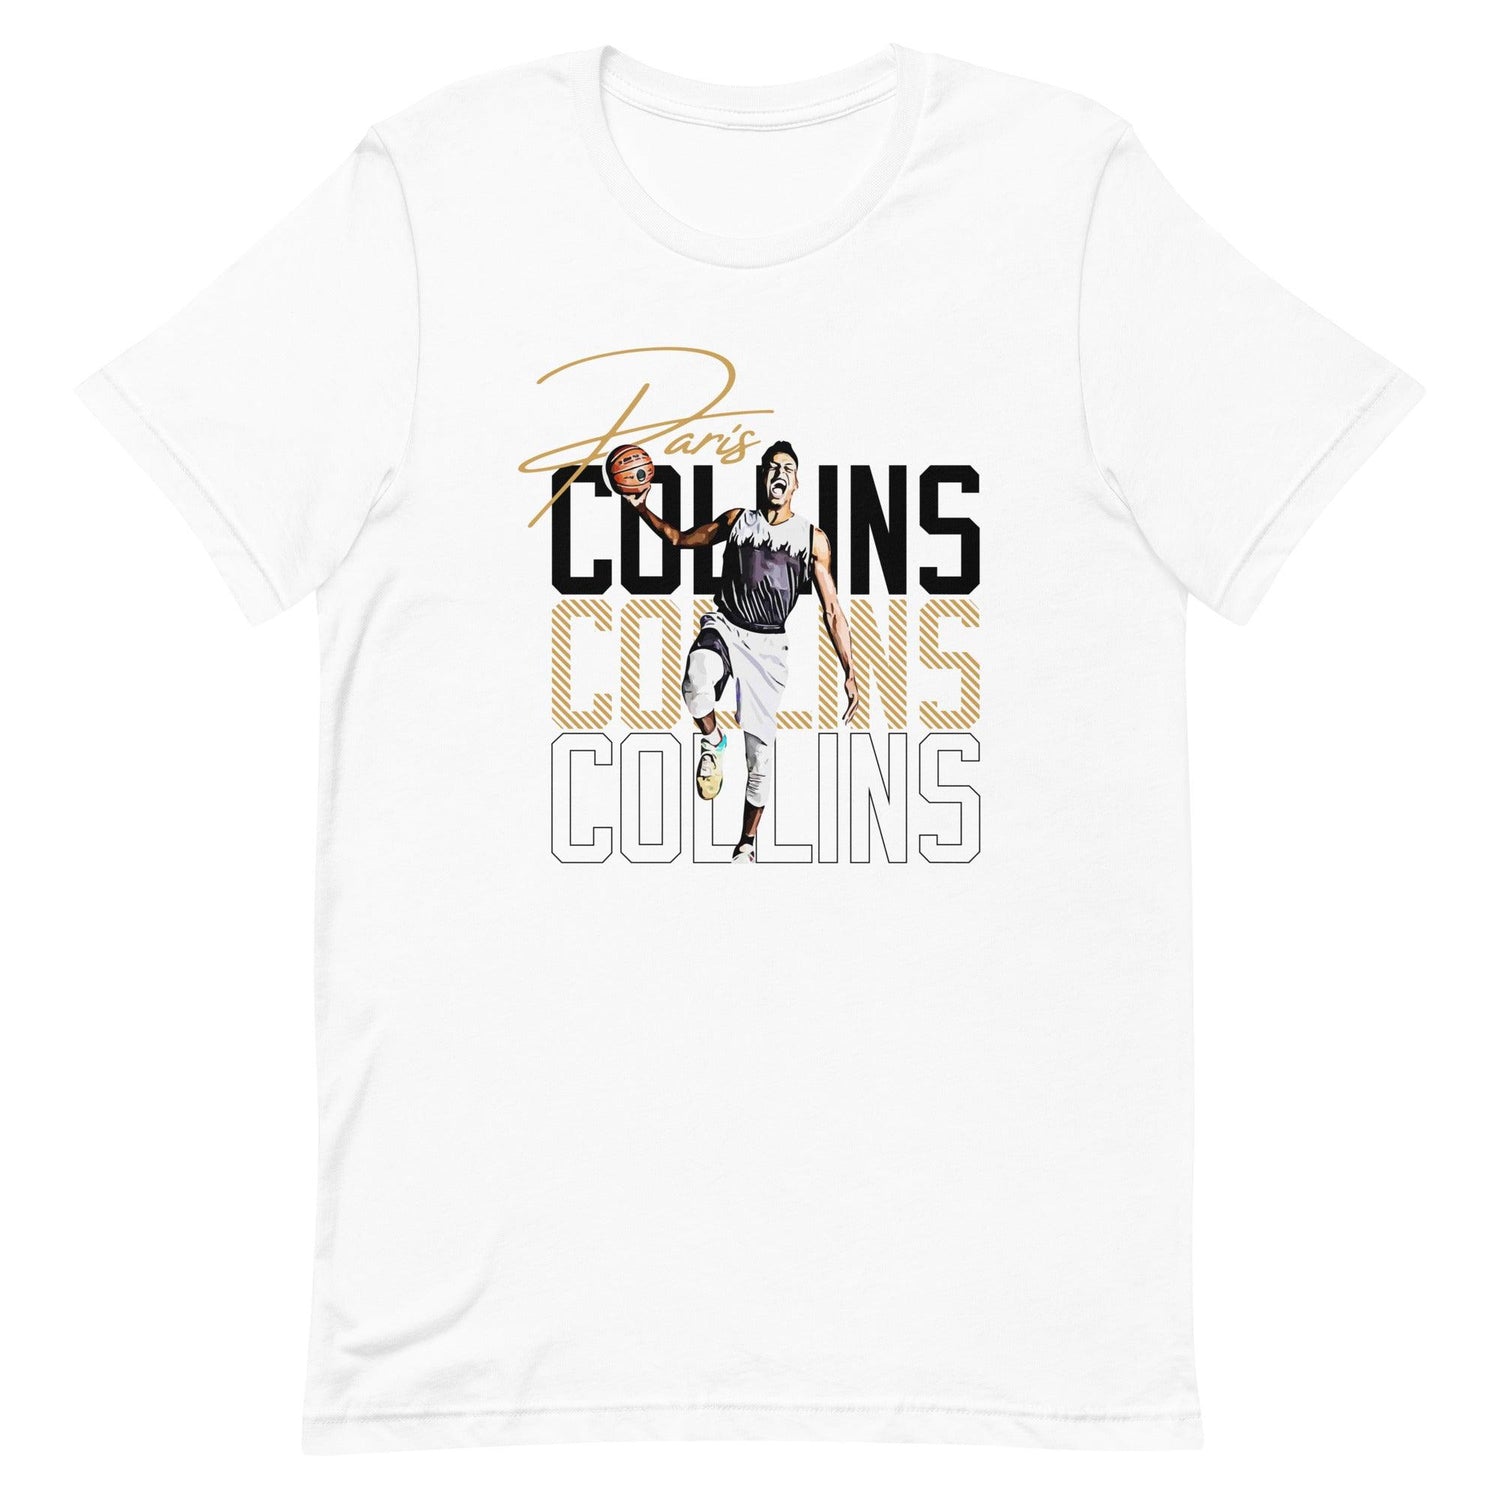 Paris Collins “Essential” t-shirt - Fan Arch